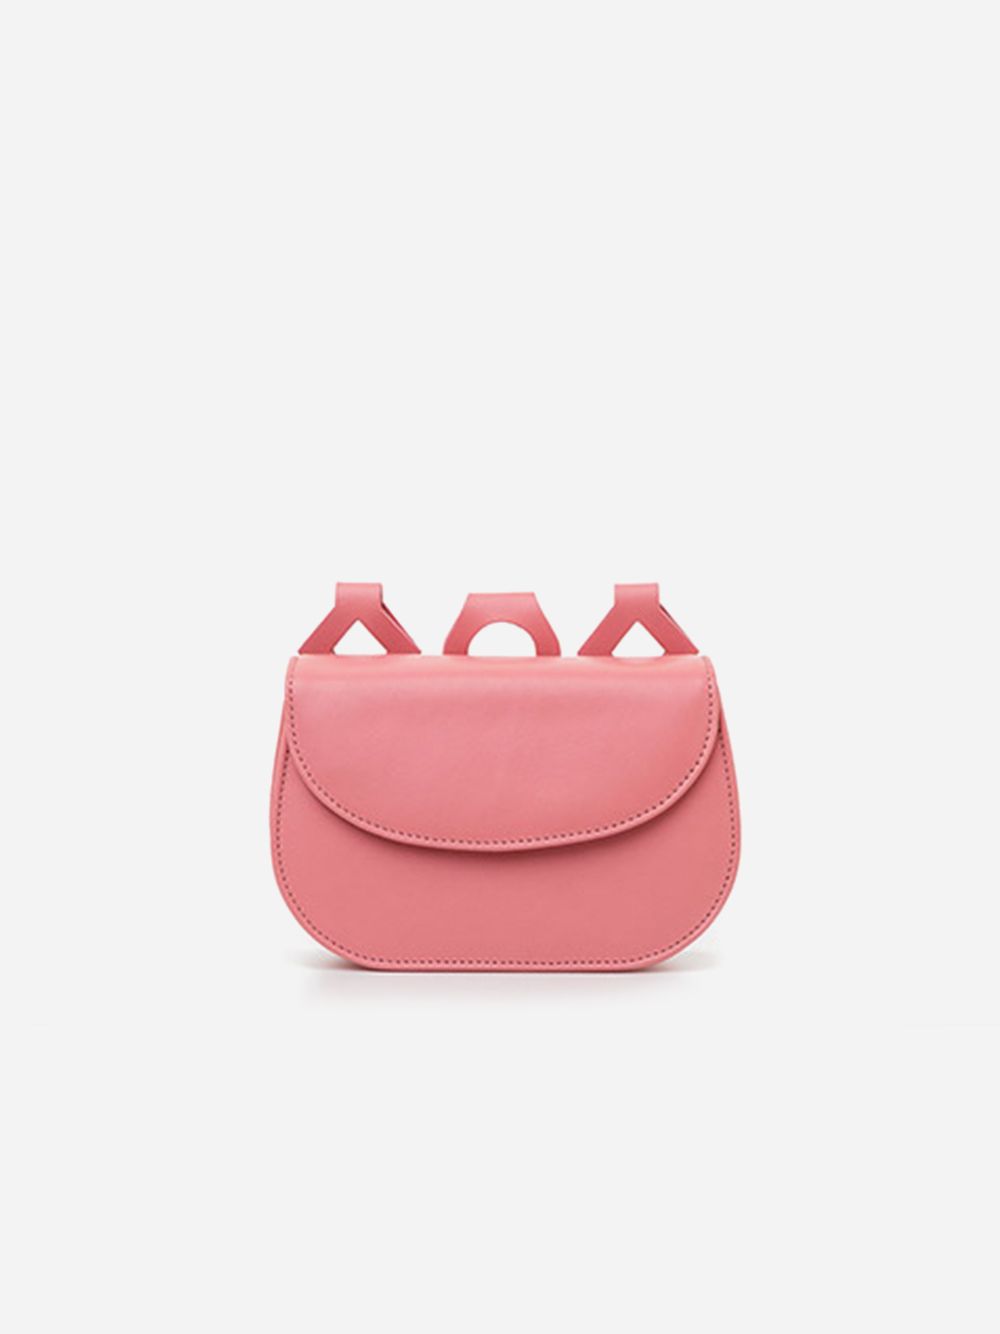 Naomi Exquisite Pink Bag | Âme Moi